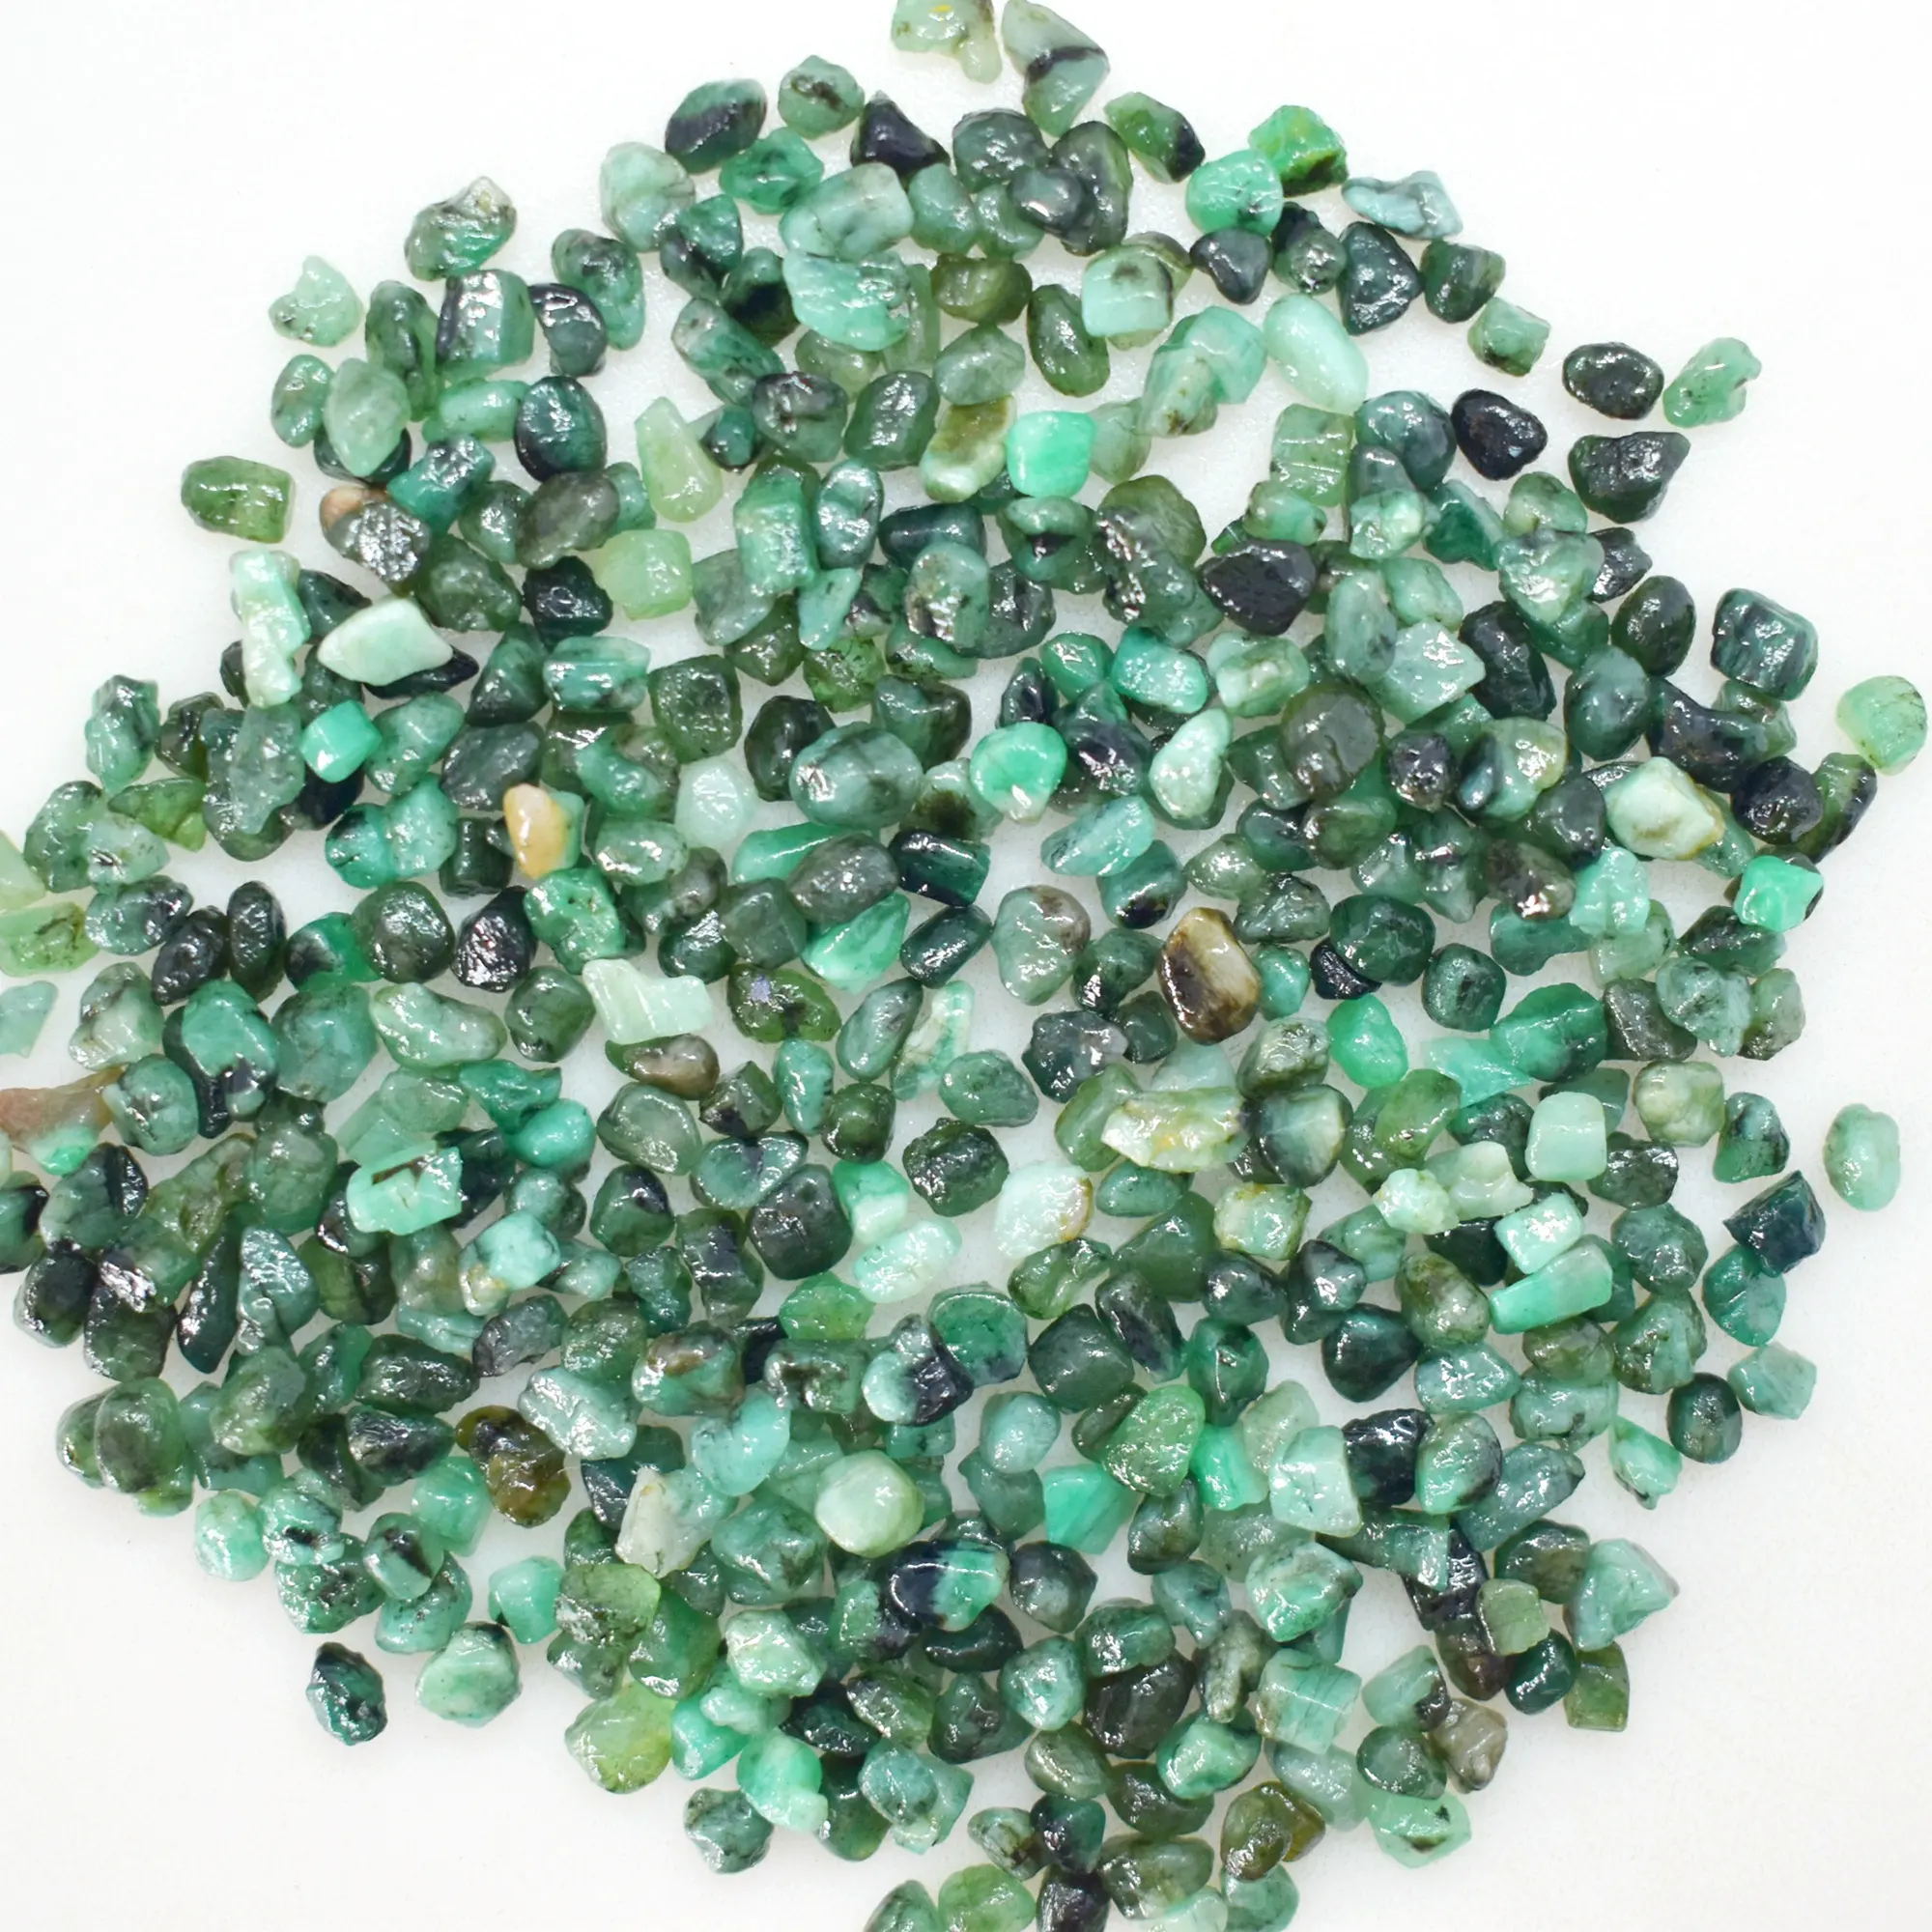 Emerald Ruwe Stenen Voor Koop, Unshaped Green Emerald Ruwe Edelsteen, Ruwe Stenen Voor Healing